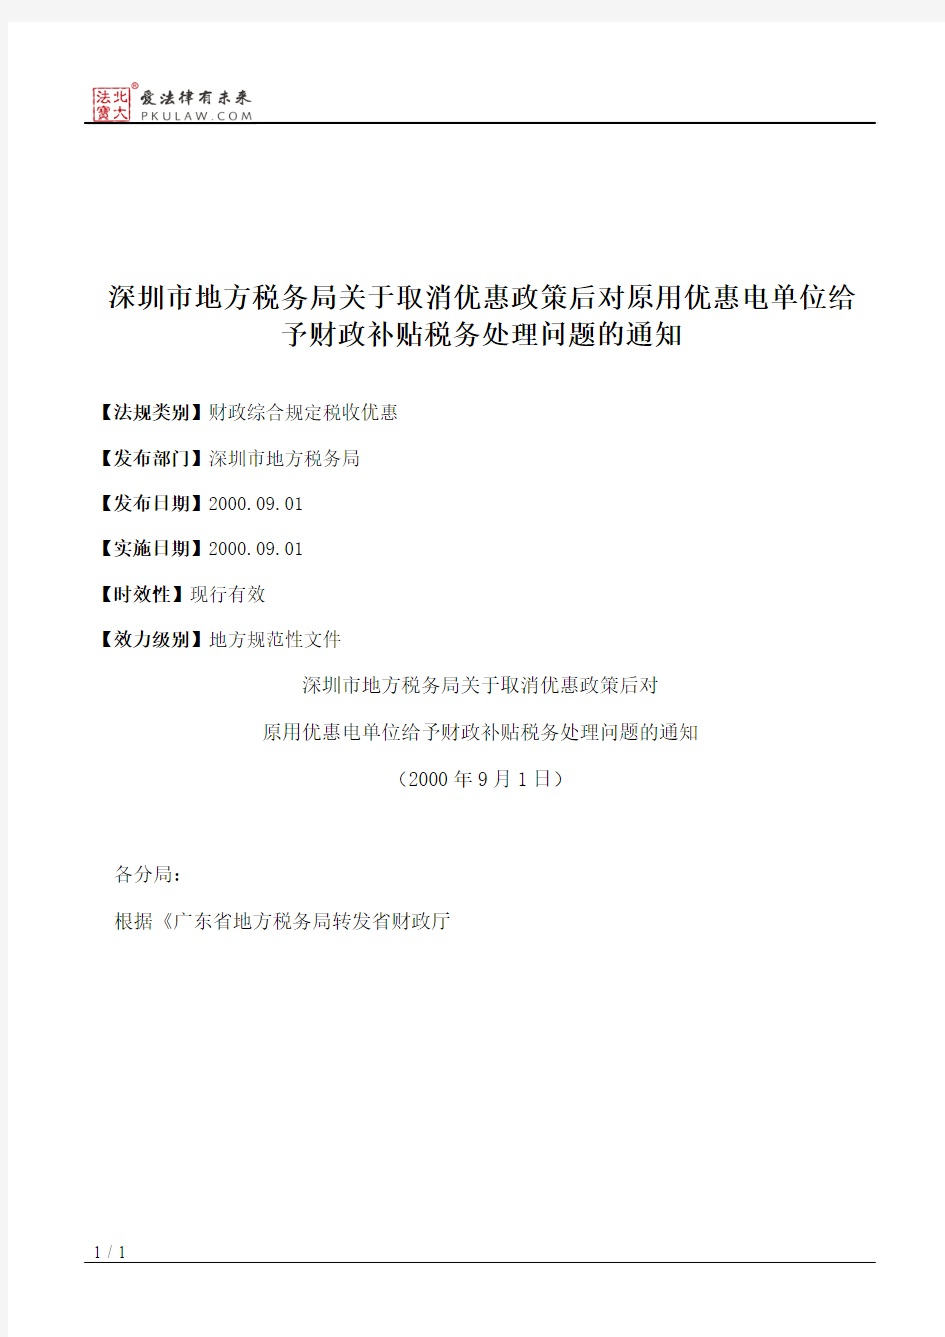 深圳市地方税务局关于取消优惠政策后对原用优惠电单位给予财政补